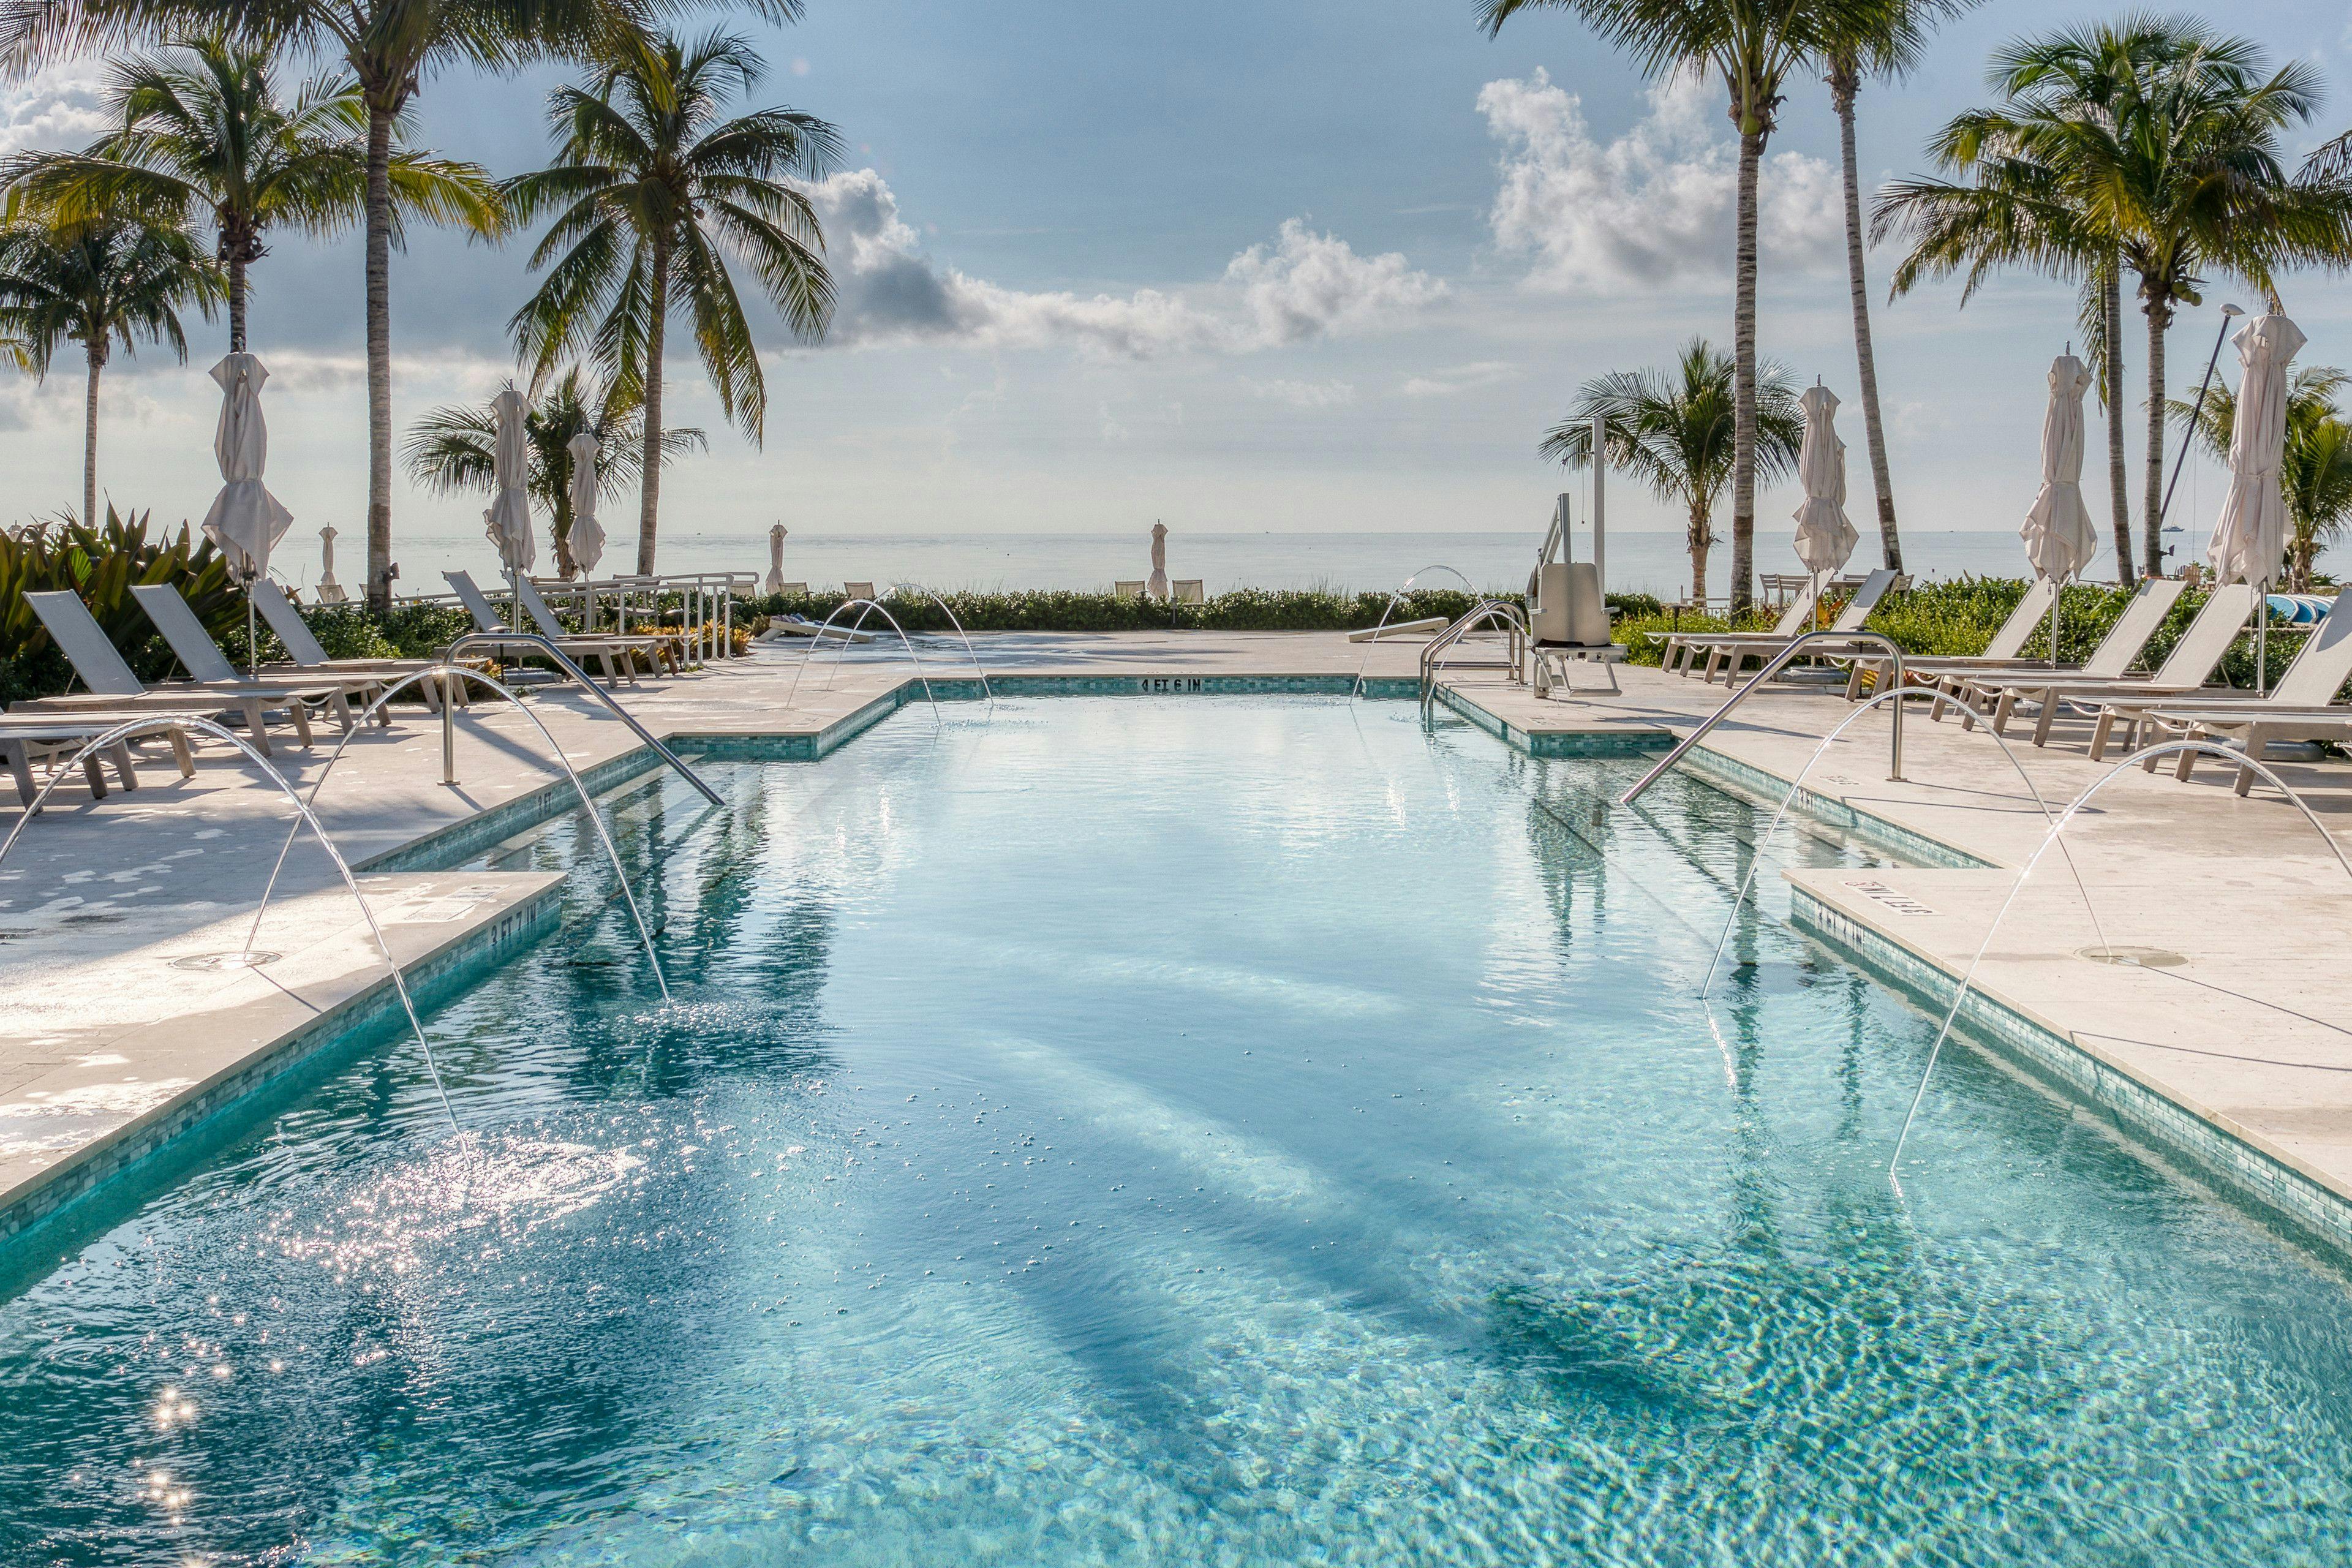 Communal outdoor pool in Islamorada Florida Keys